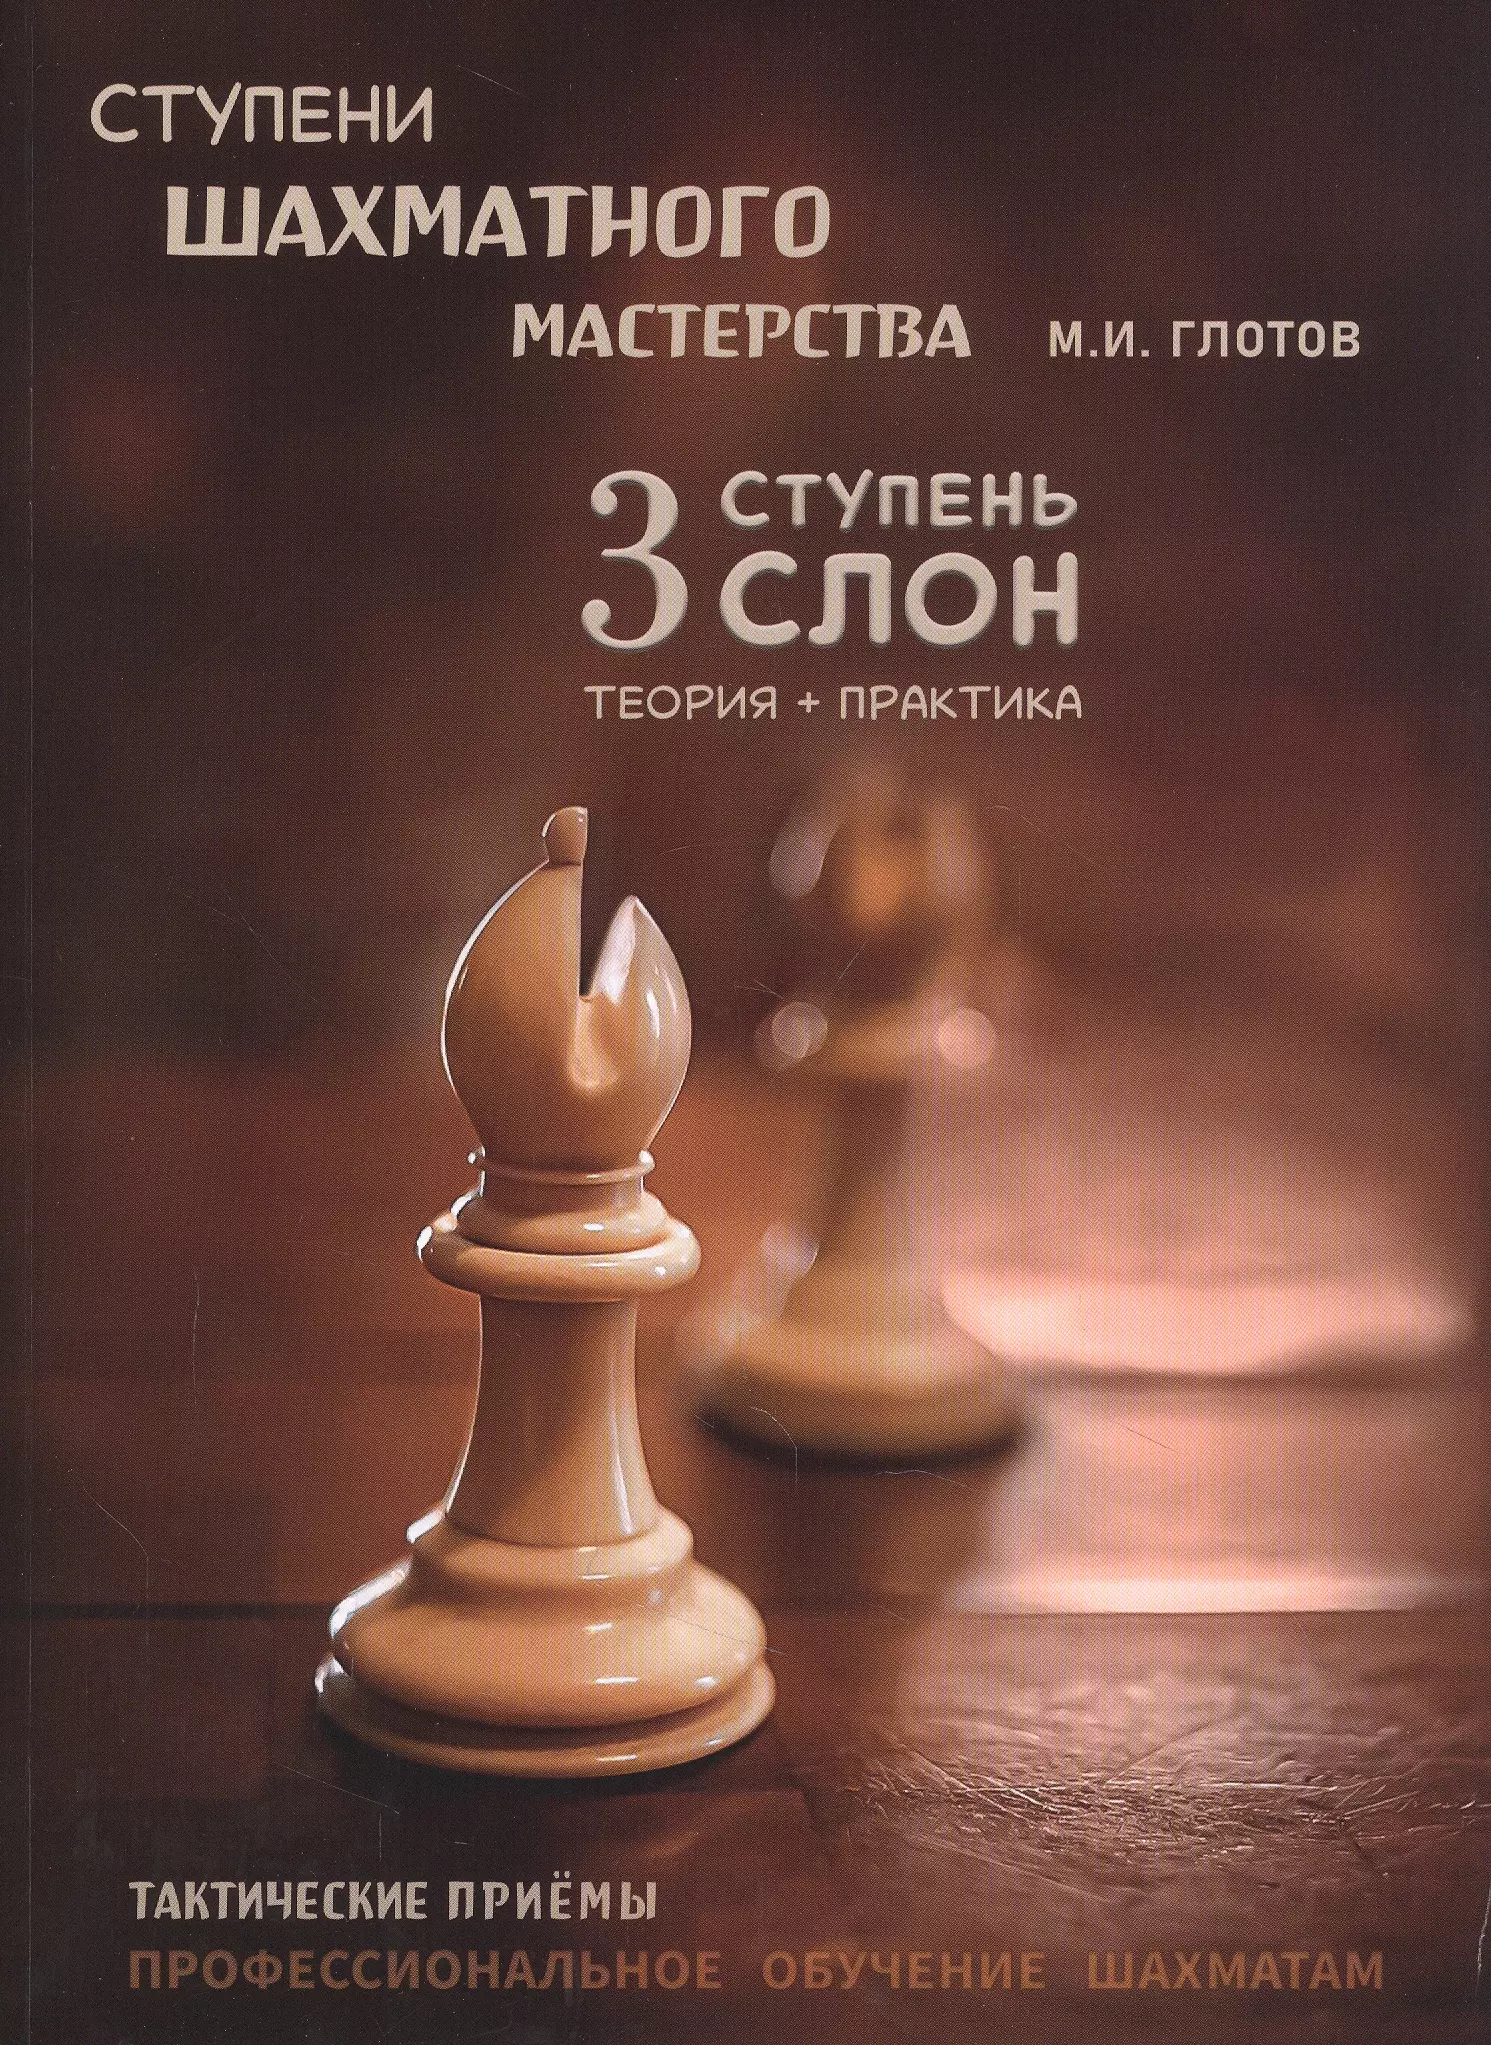 глотов м ступени шахматного мастерства 4 ступень ладья Ступени шахматного мастерства. 3 ступень Слон